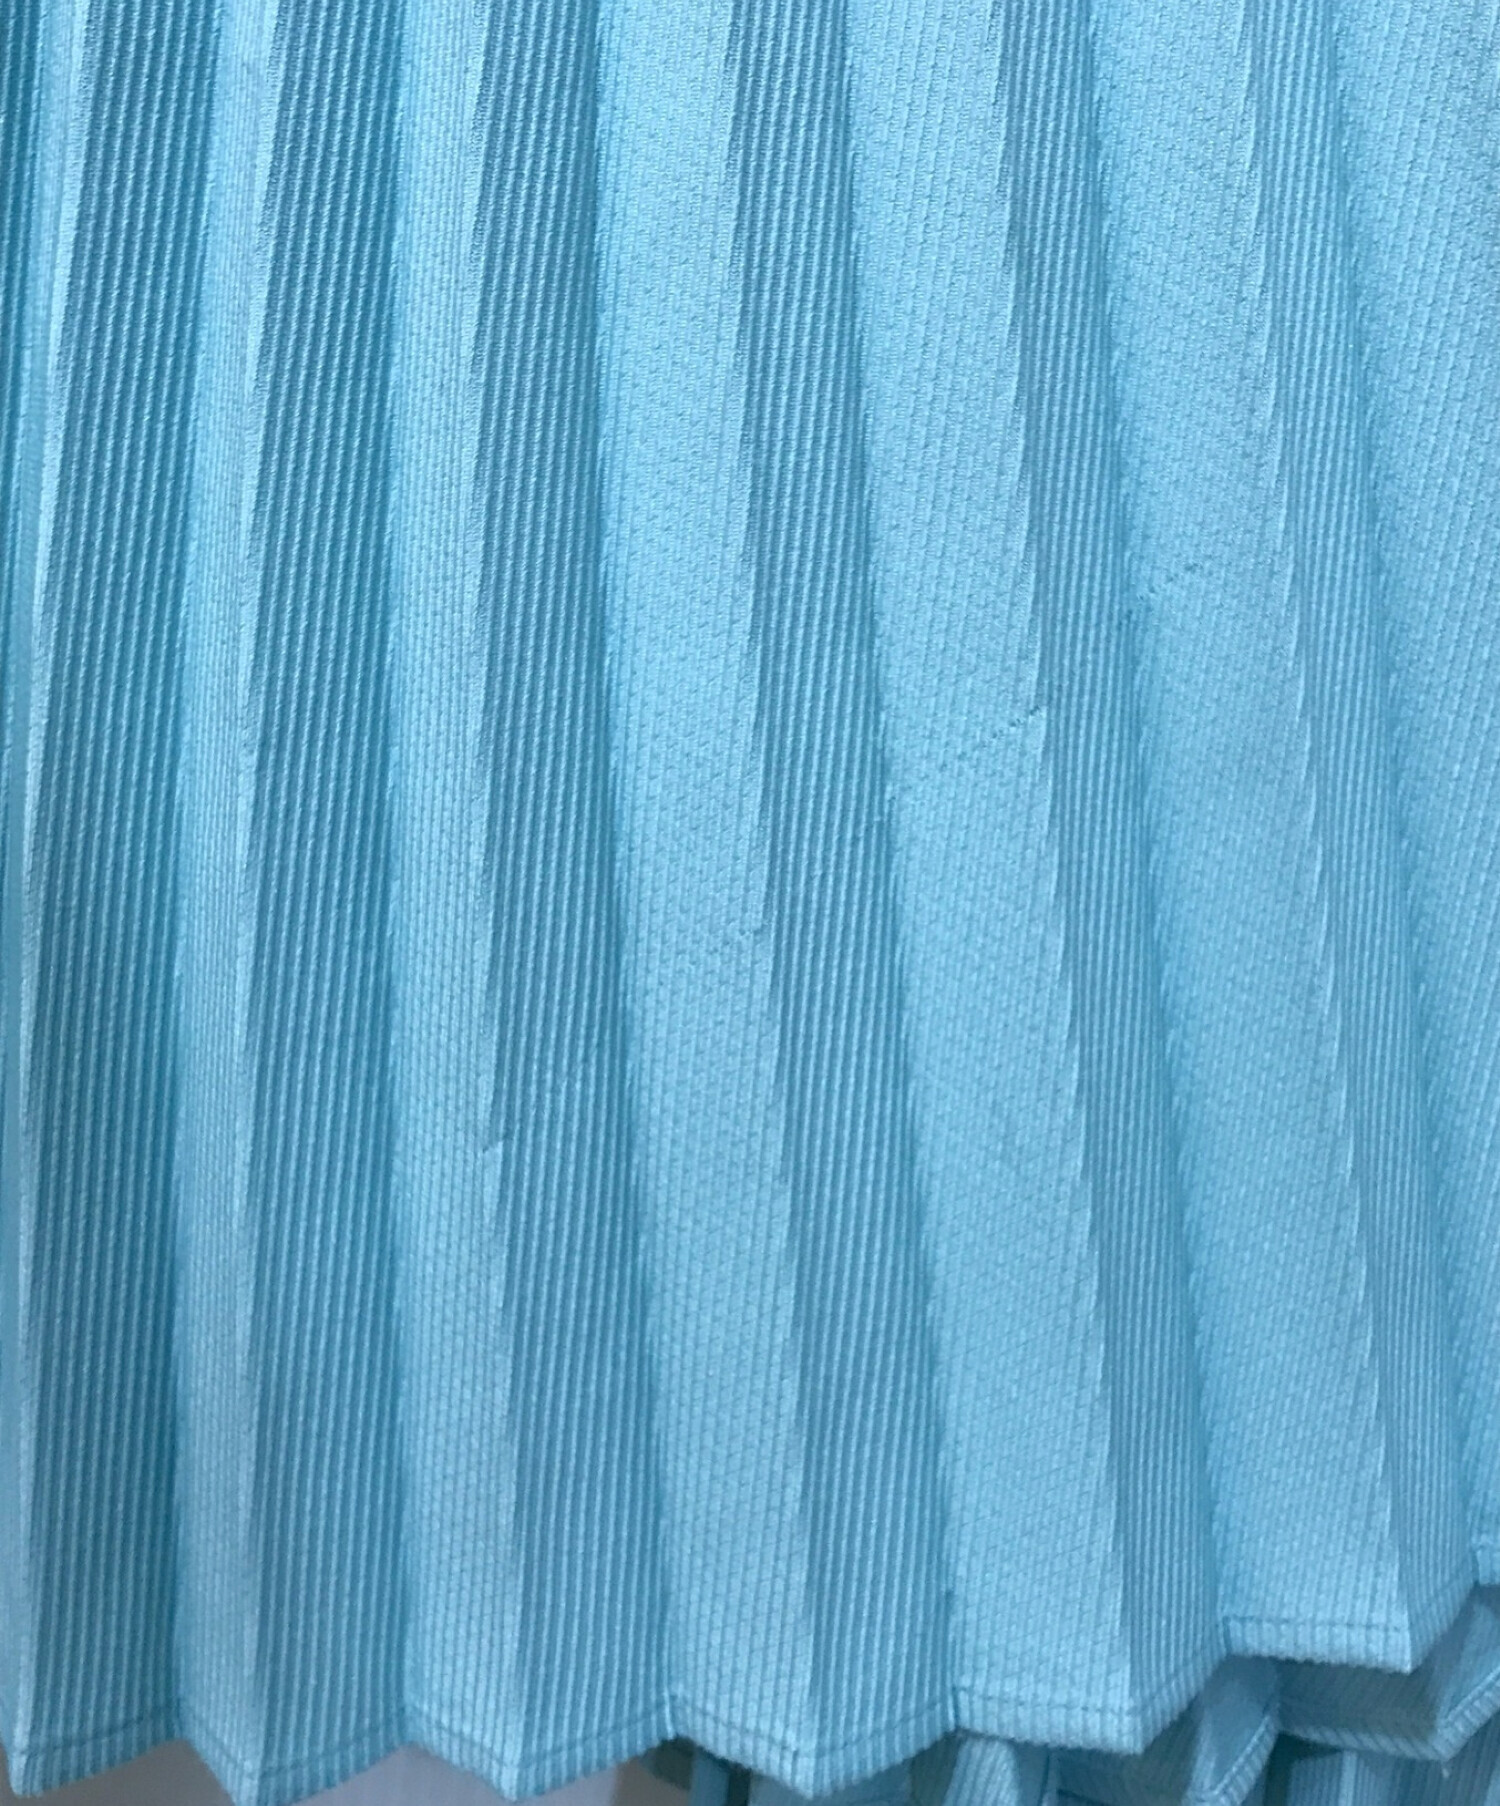 myclozette cen. (マイクローゼット セン) プリーツスカート ブルー サイズ:36